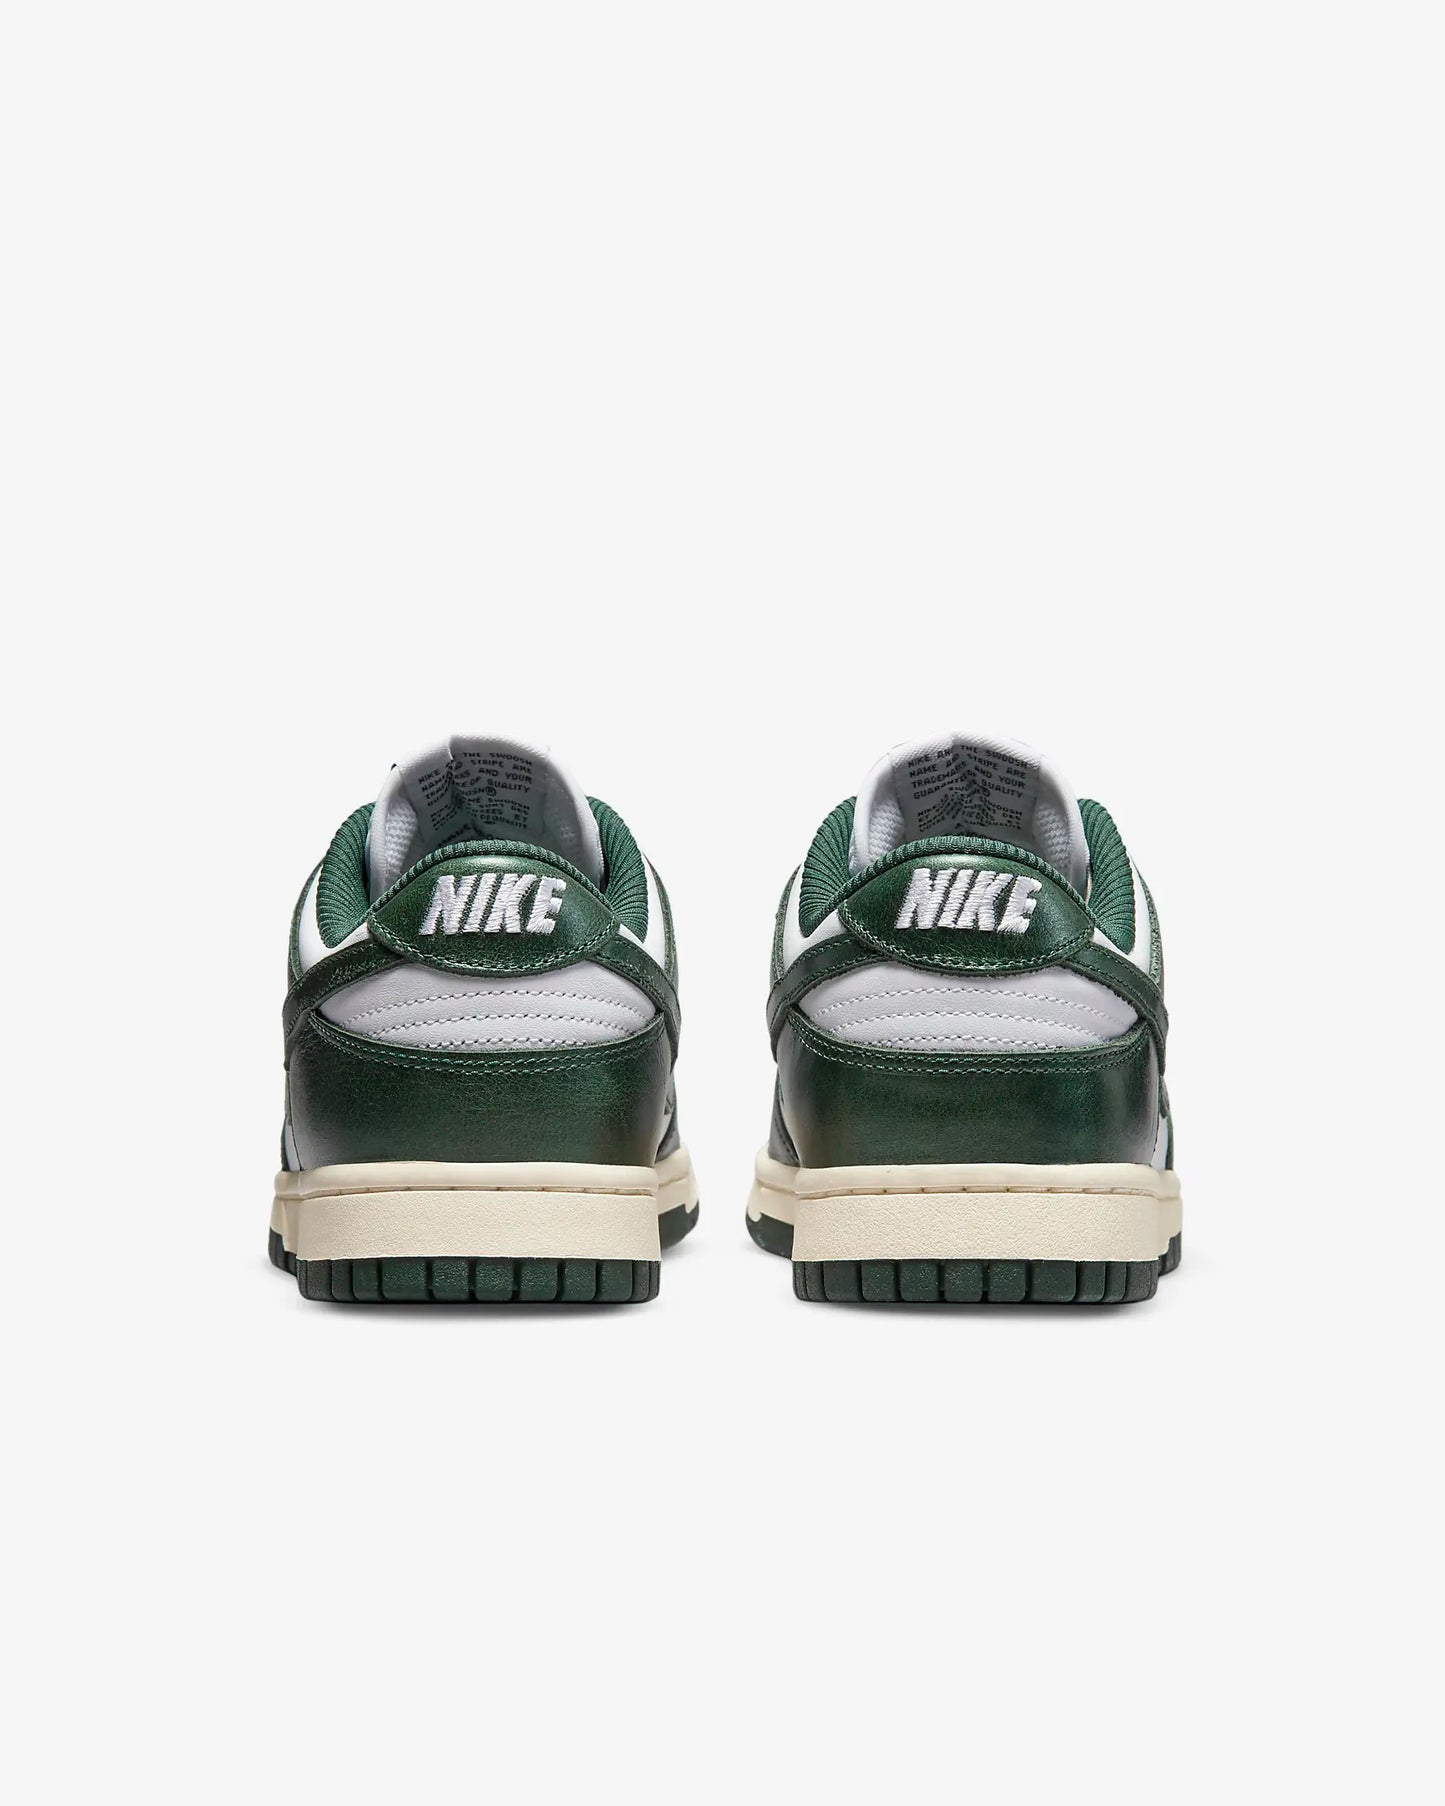 Nike Dunk Low Premium - Vintage Green